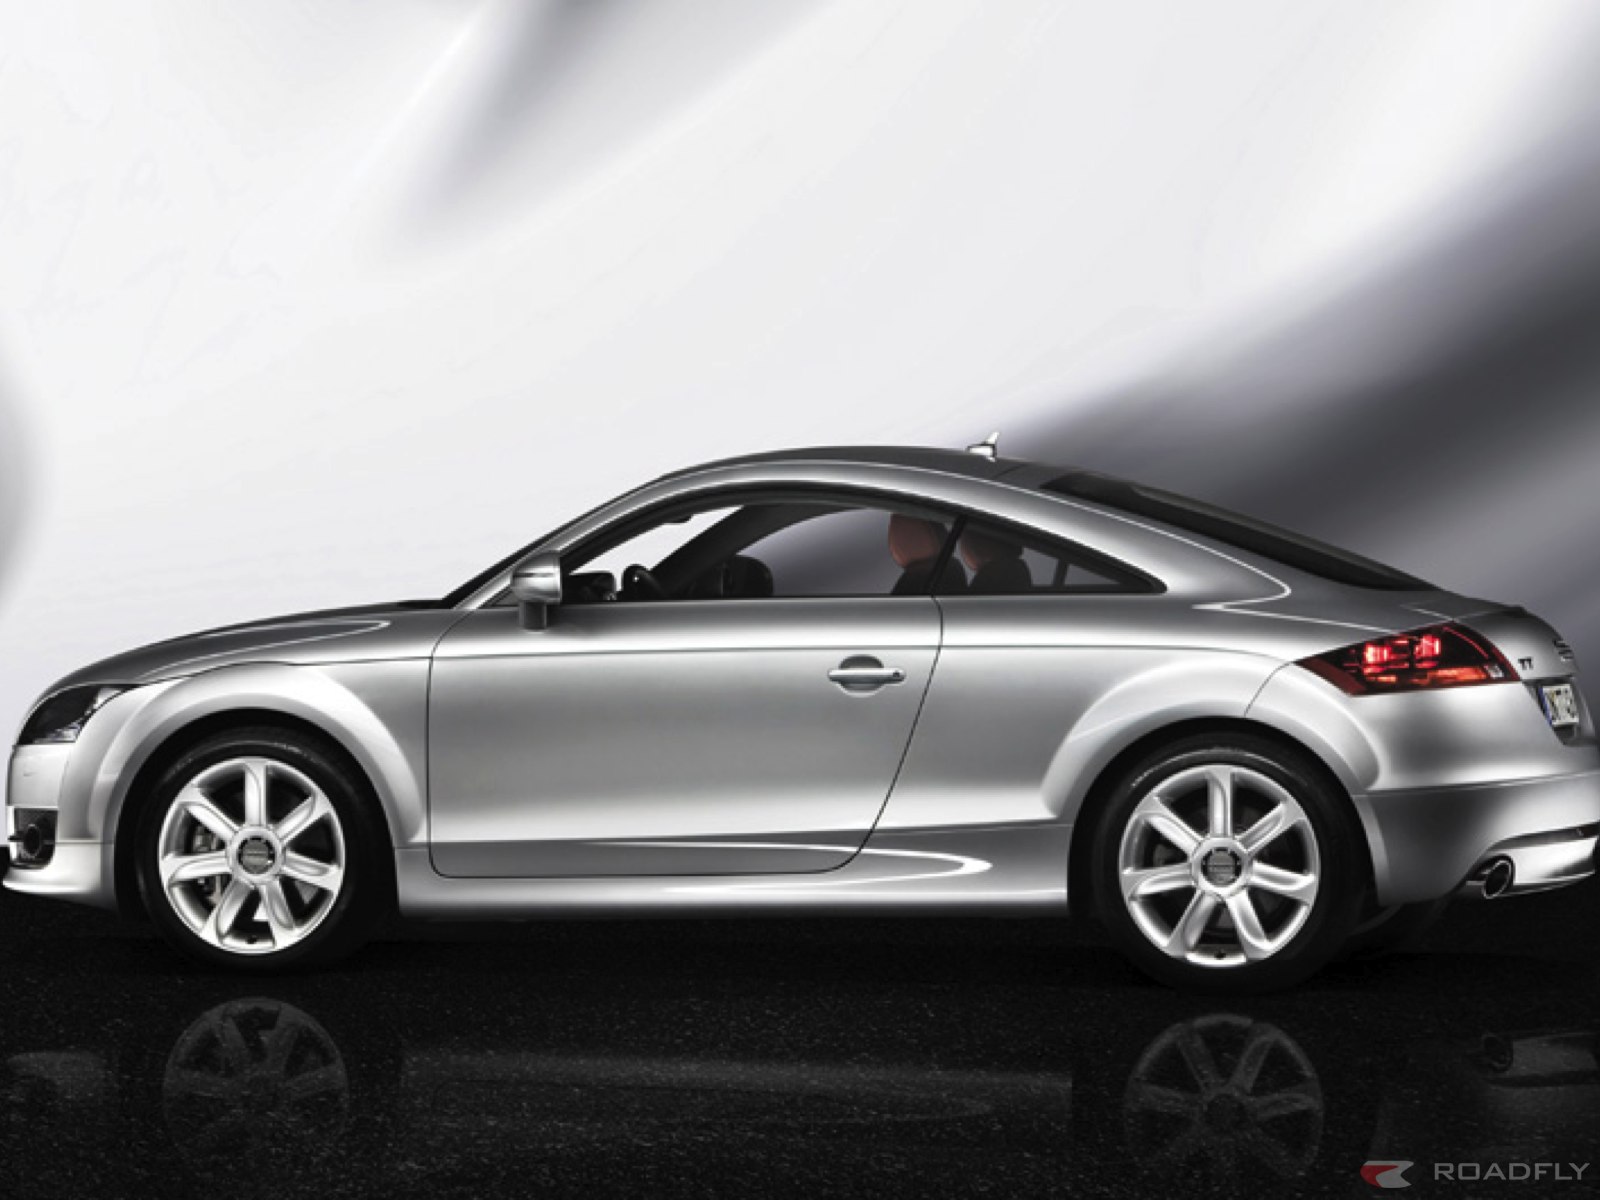 Cars Wallpapers: 2007 Audi TT Wallpapers